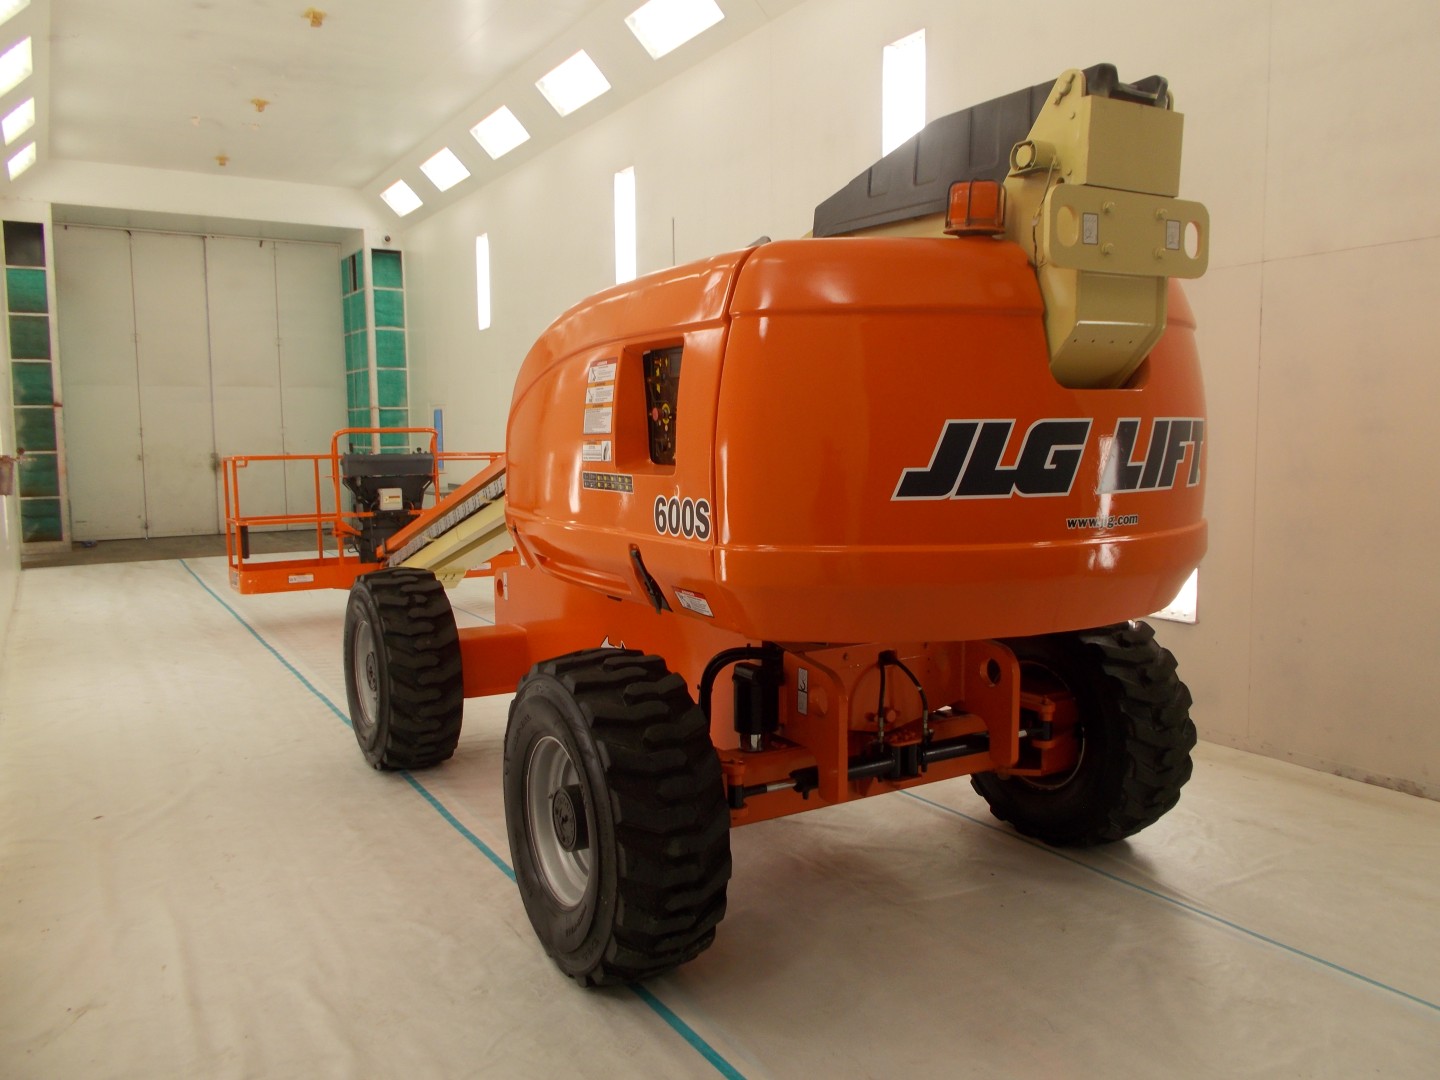 orange 600s jlg lift